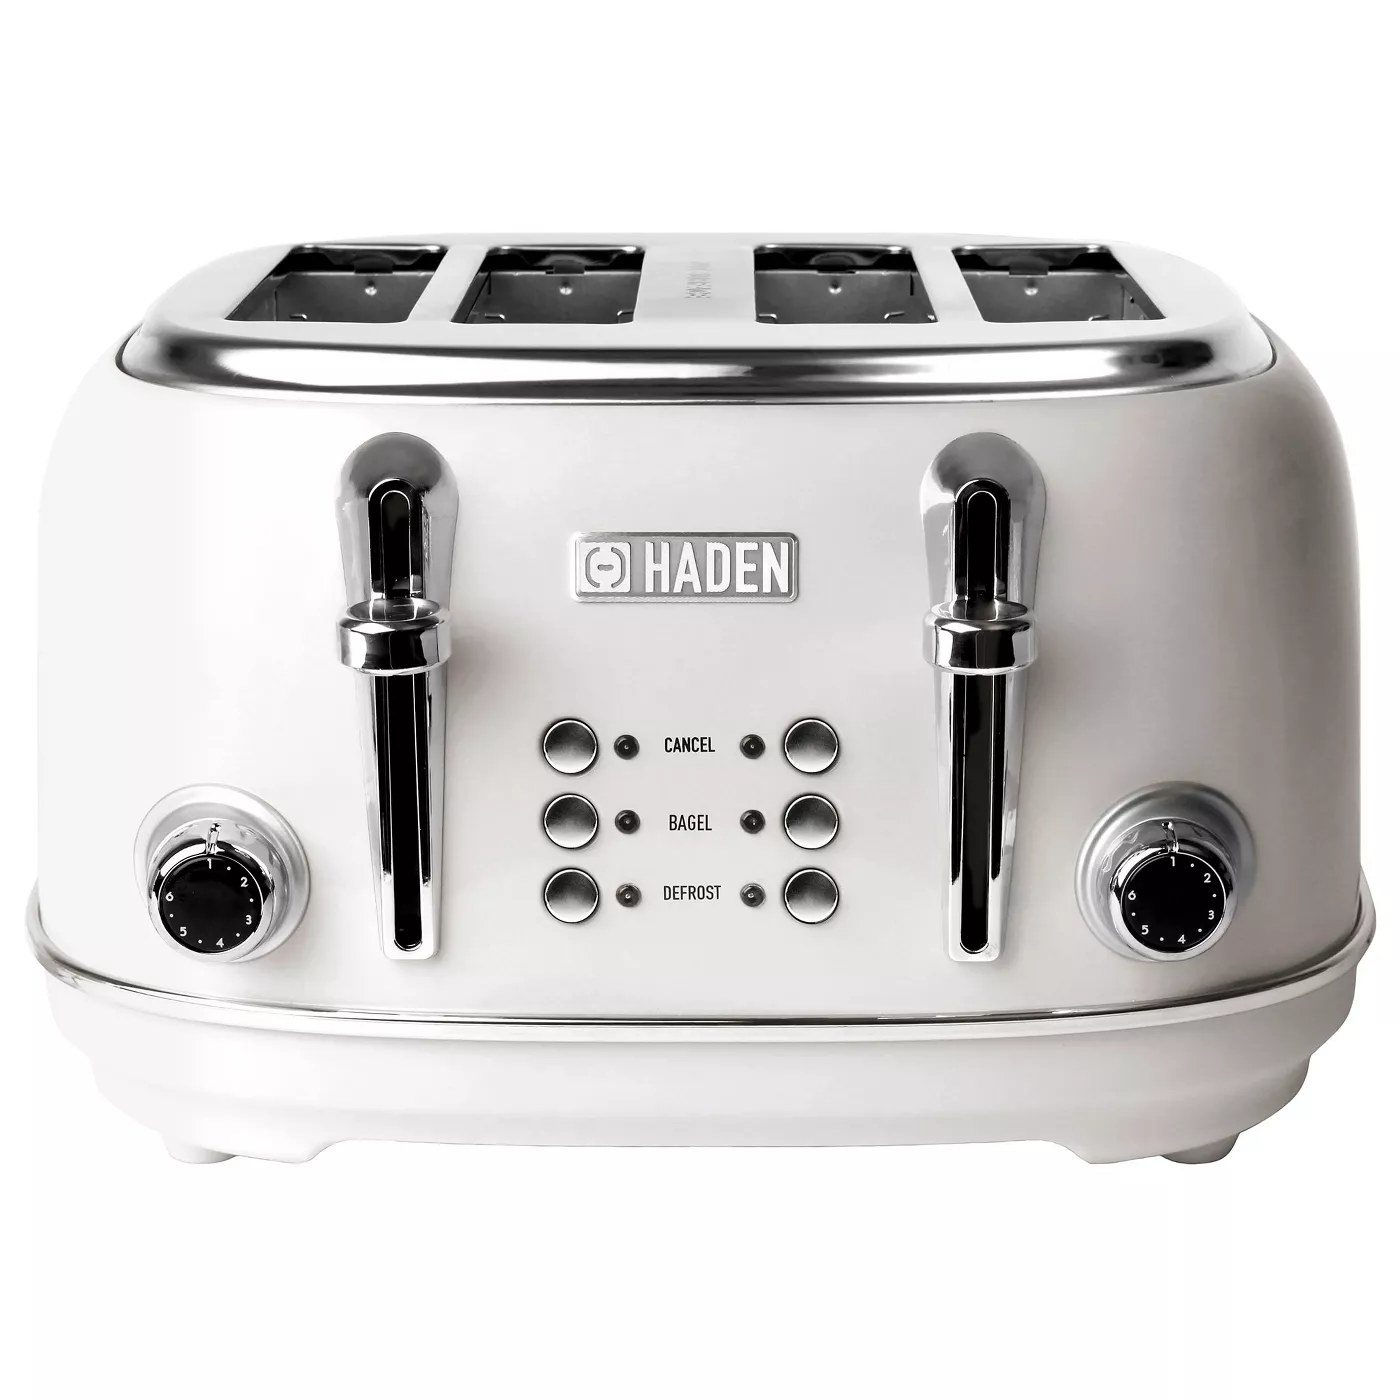 The white Haden toaster